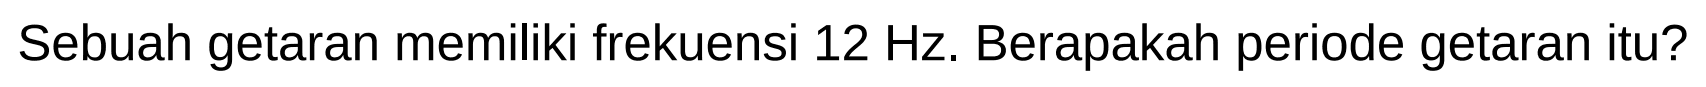 Sebuah getaran memiliki frekuensi  12 Hz . Berapakah periode getaran itu?